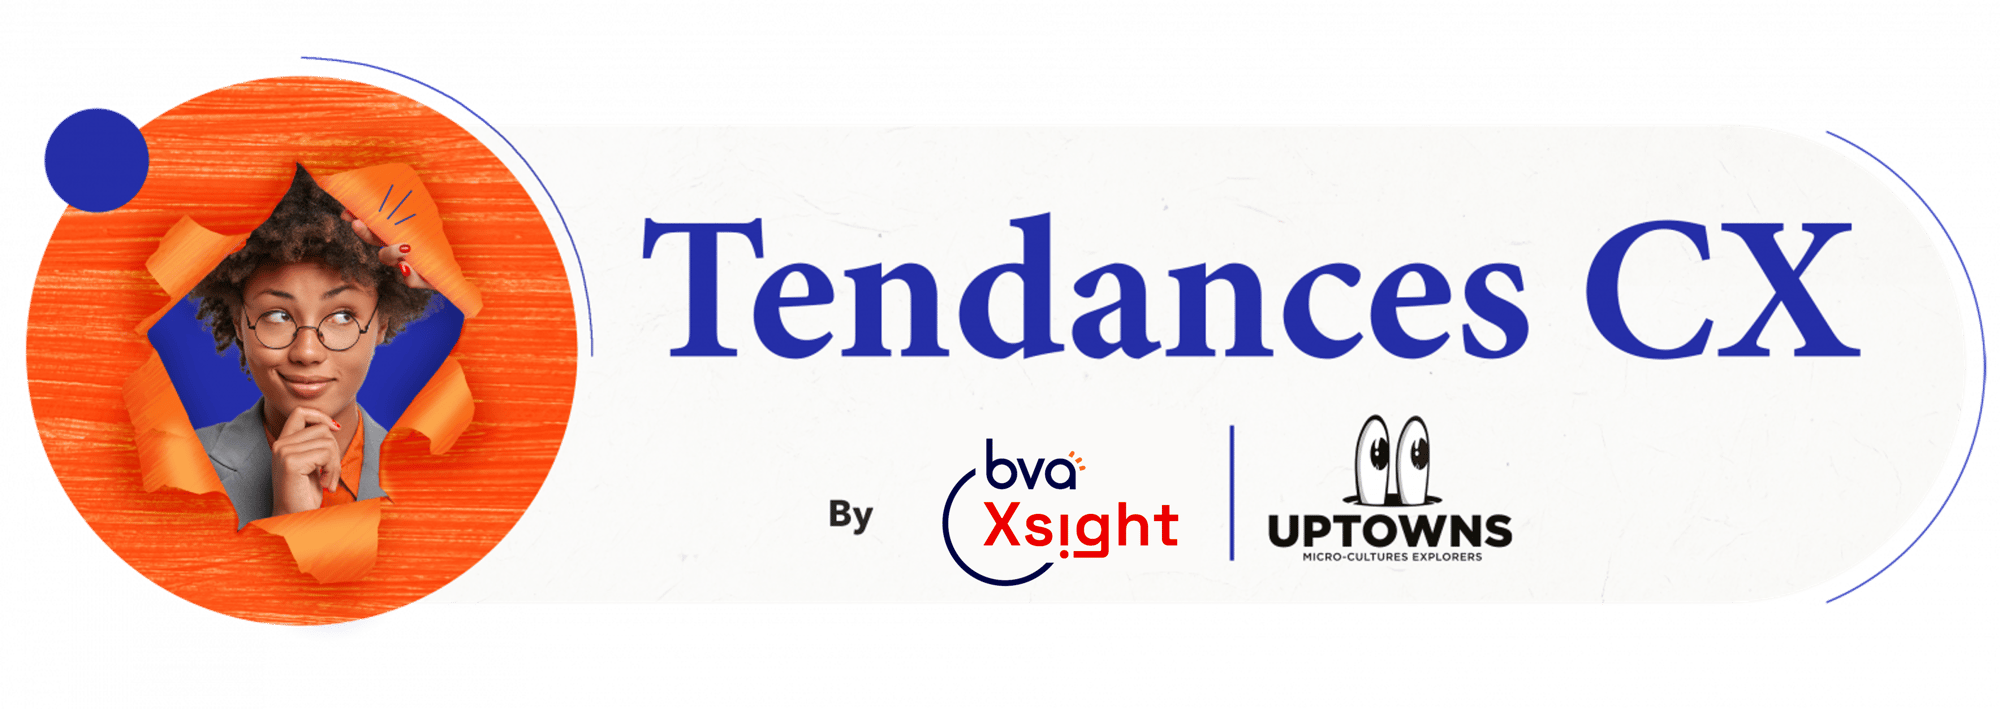 Bannière_CX_Tendances